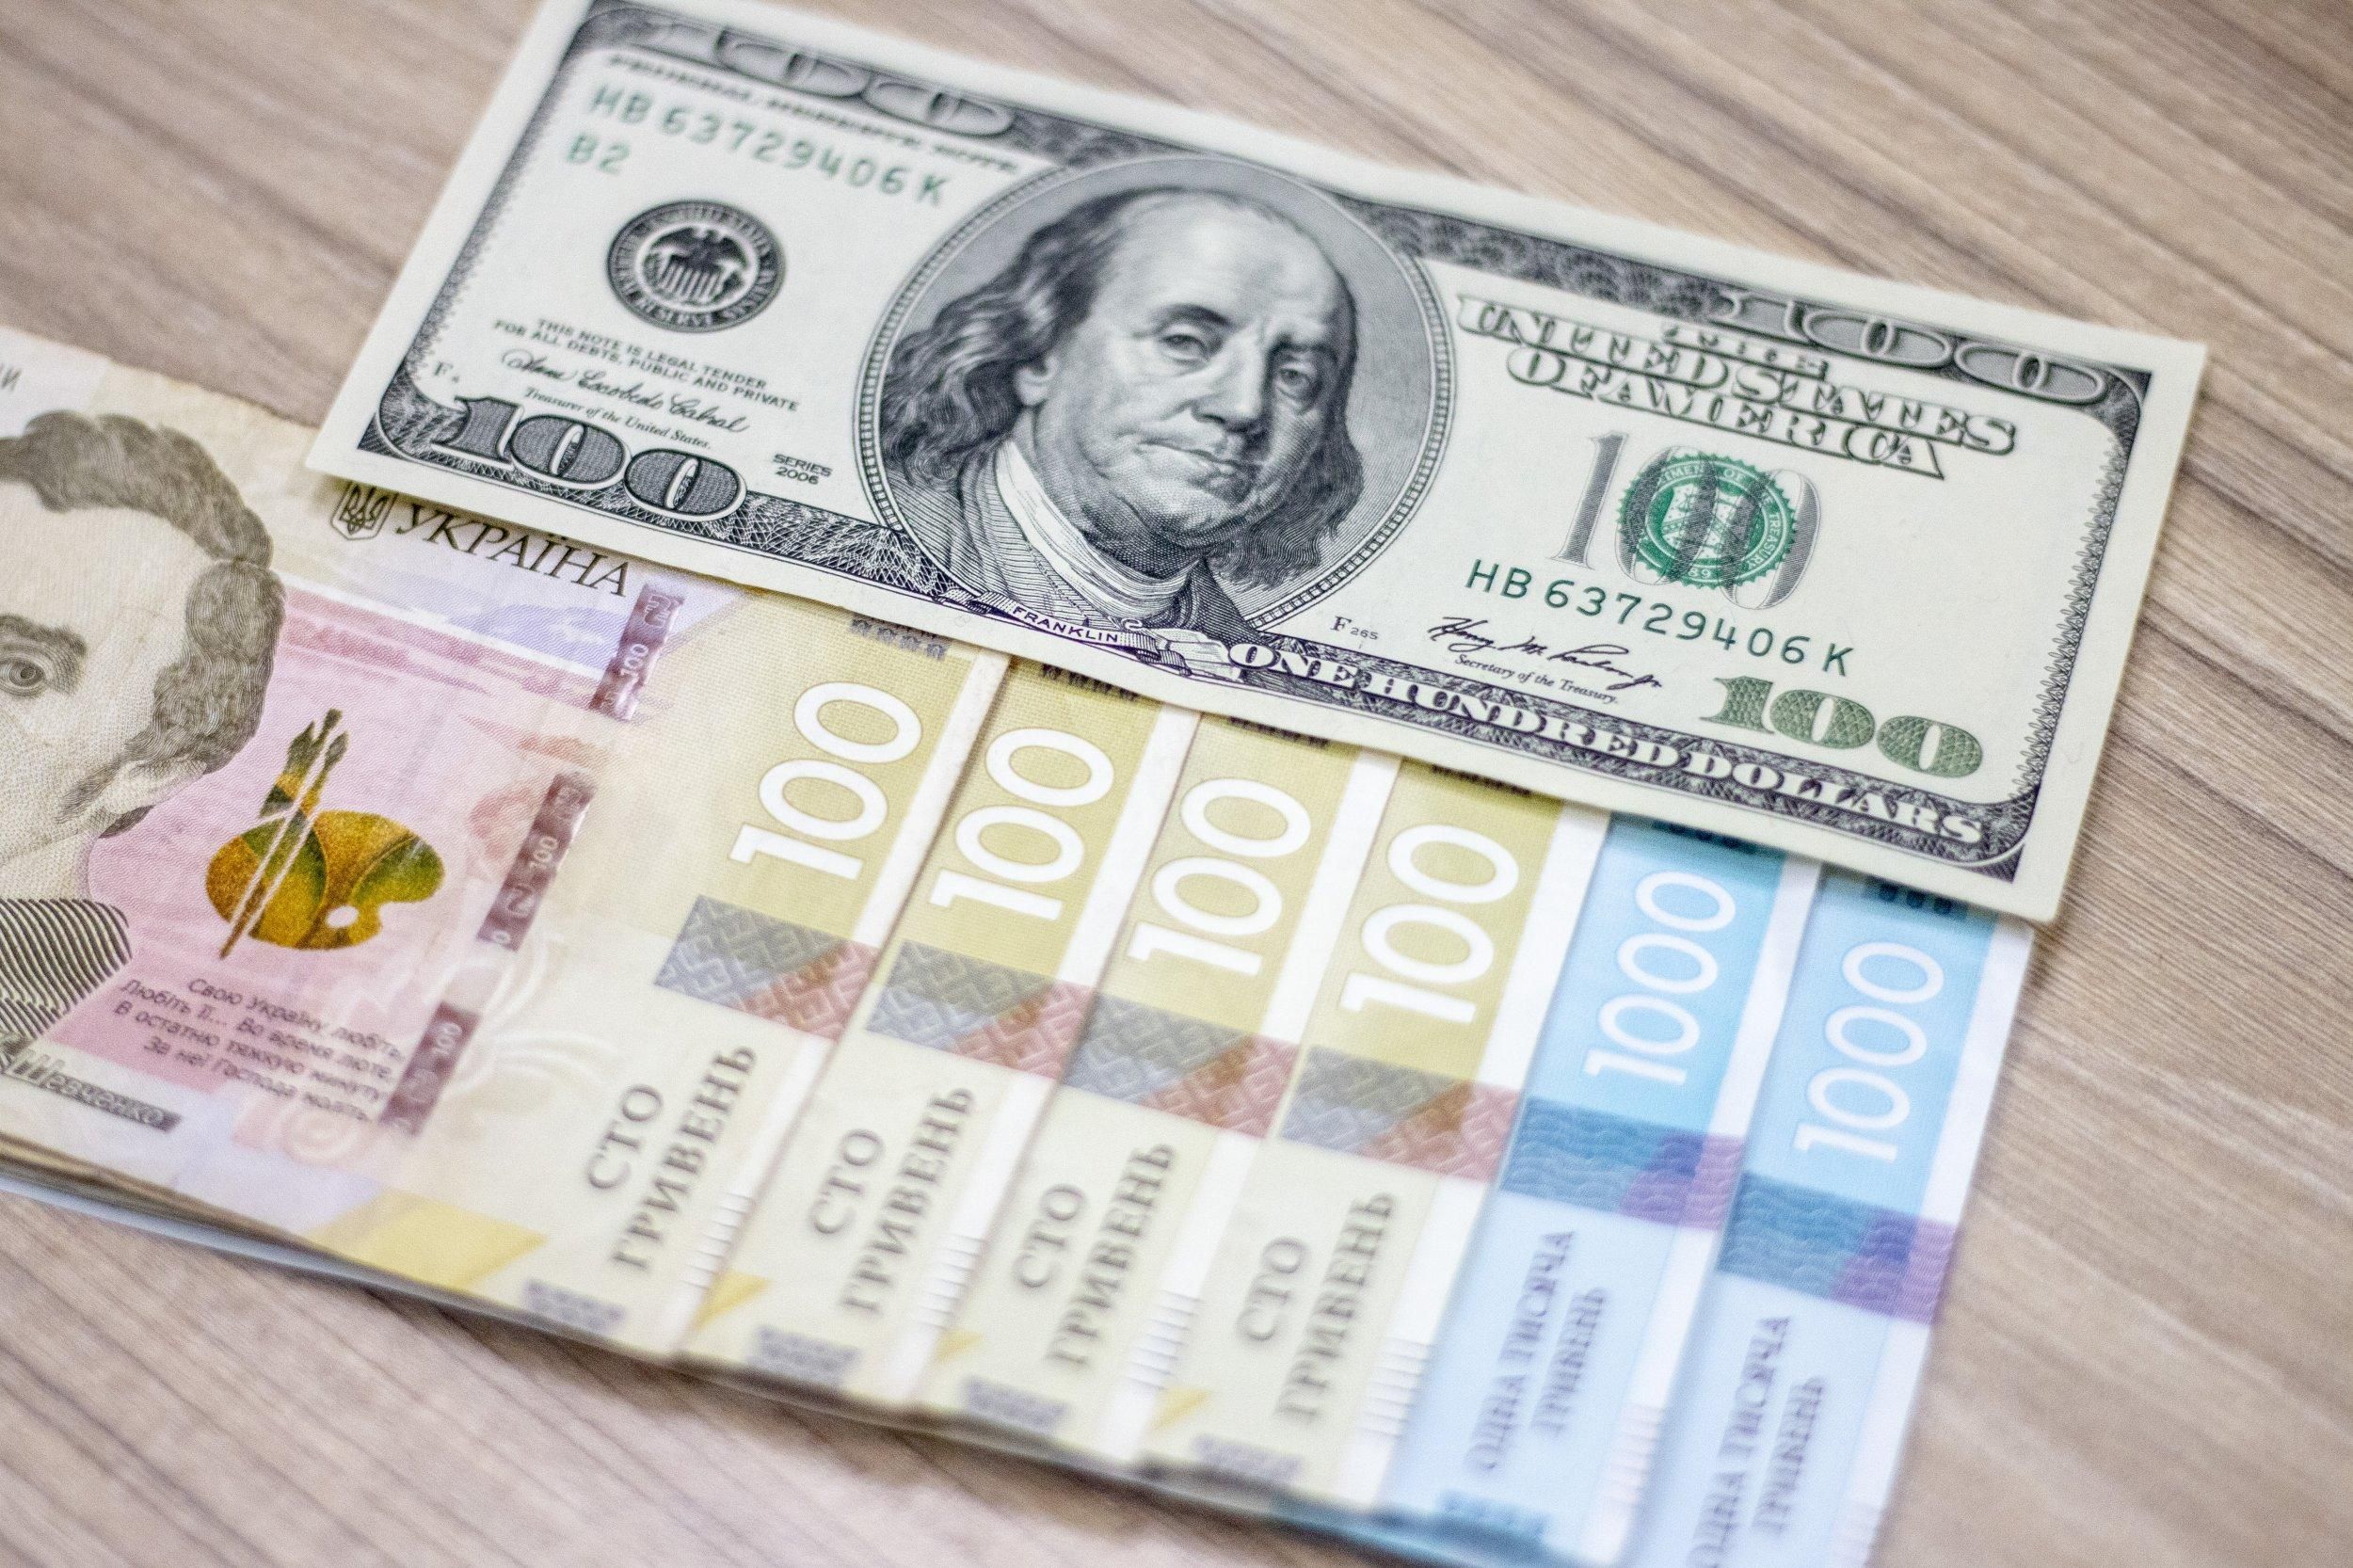  Гривна дорожает: как заработать во время кризиса на курсе валют